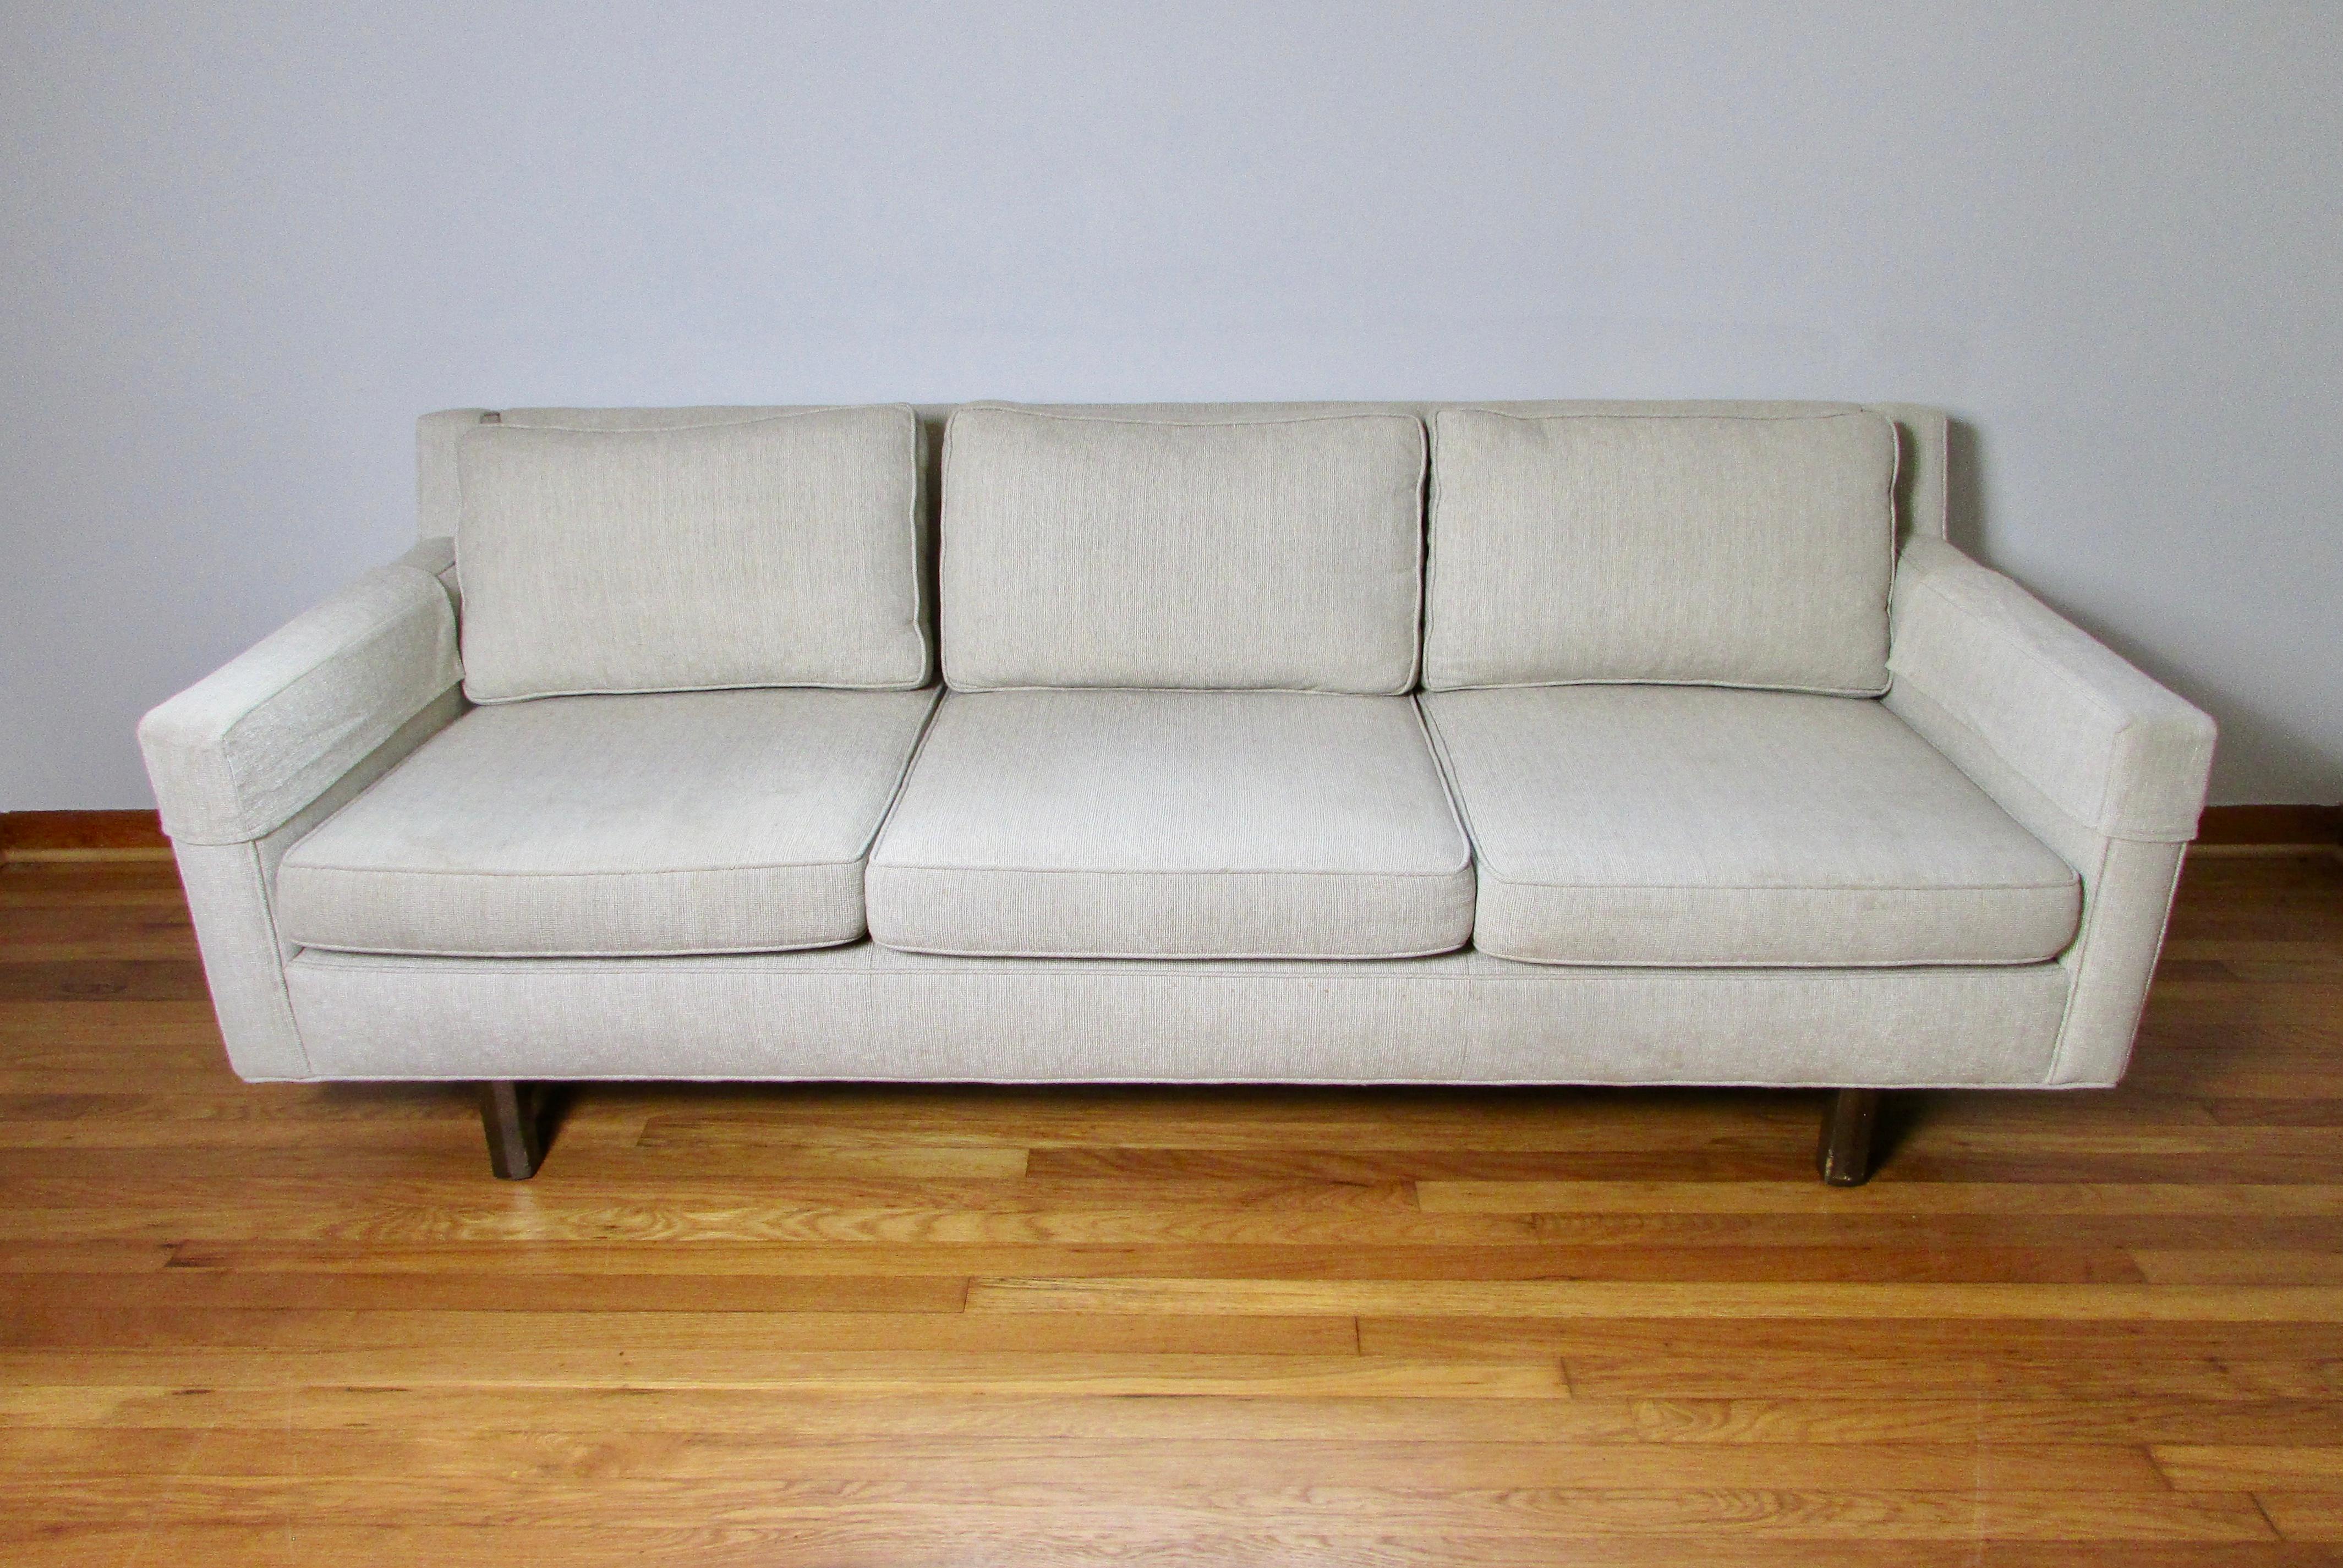 Dreisitziges Sofa aus der Mitte des Jahrhunderts mit sandbeigem und weißem, boucle-ähnlichem Webstoffbezug. Drei daunengefüllte Rückenkissen und drei Sitzkissen aus Schaumstoff machen dieses Sofa bequem und schön. Erworben von einer  das Anwesen